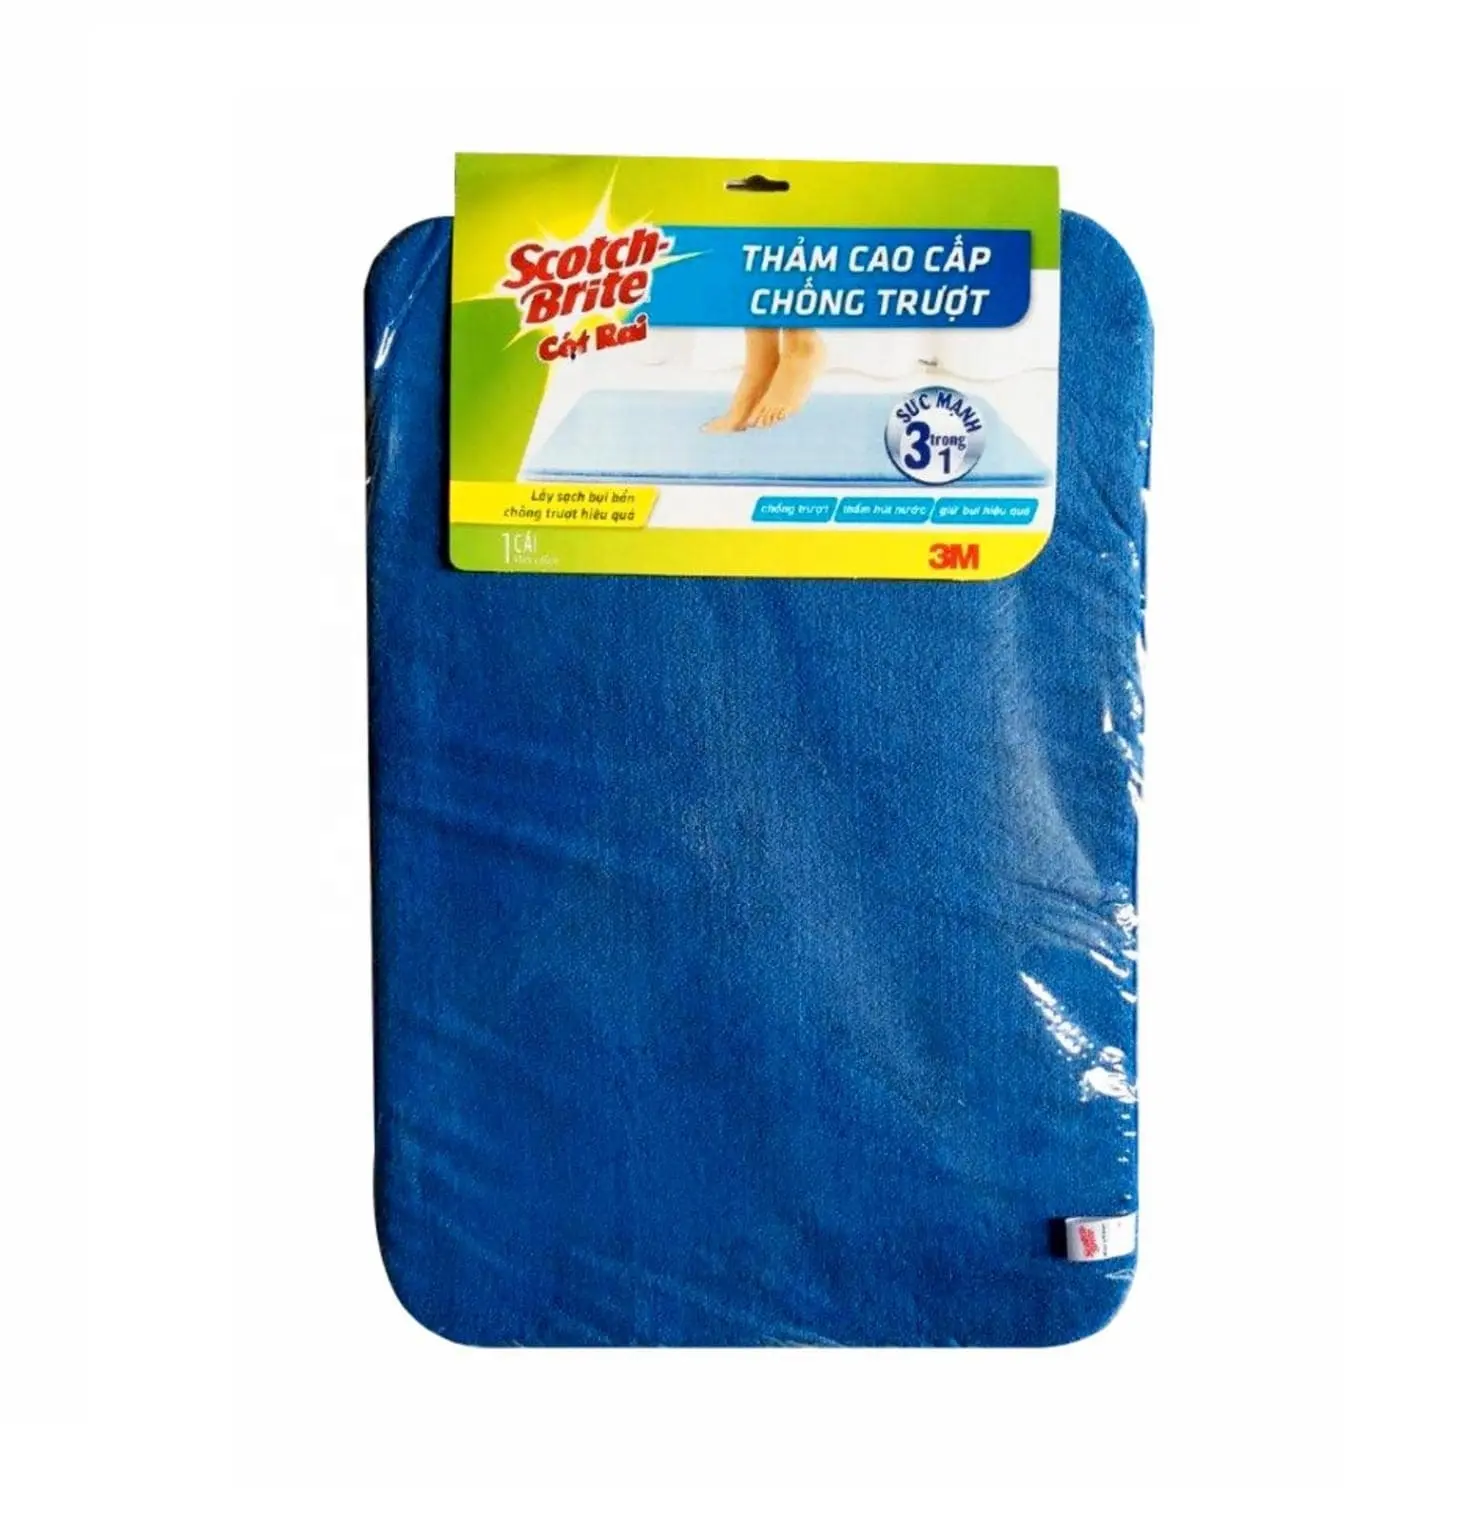 Tappetino da bagno in schiuma antiscivolo Super morbido Anti-fatica, il miglior tappetino da bagno ad alto assorbimento d'acqua ad asciugatura rapida antiscivolo